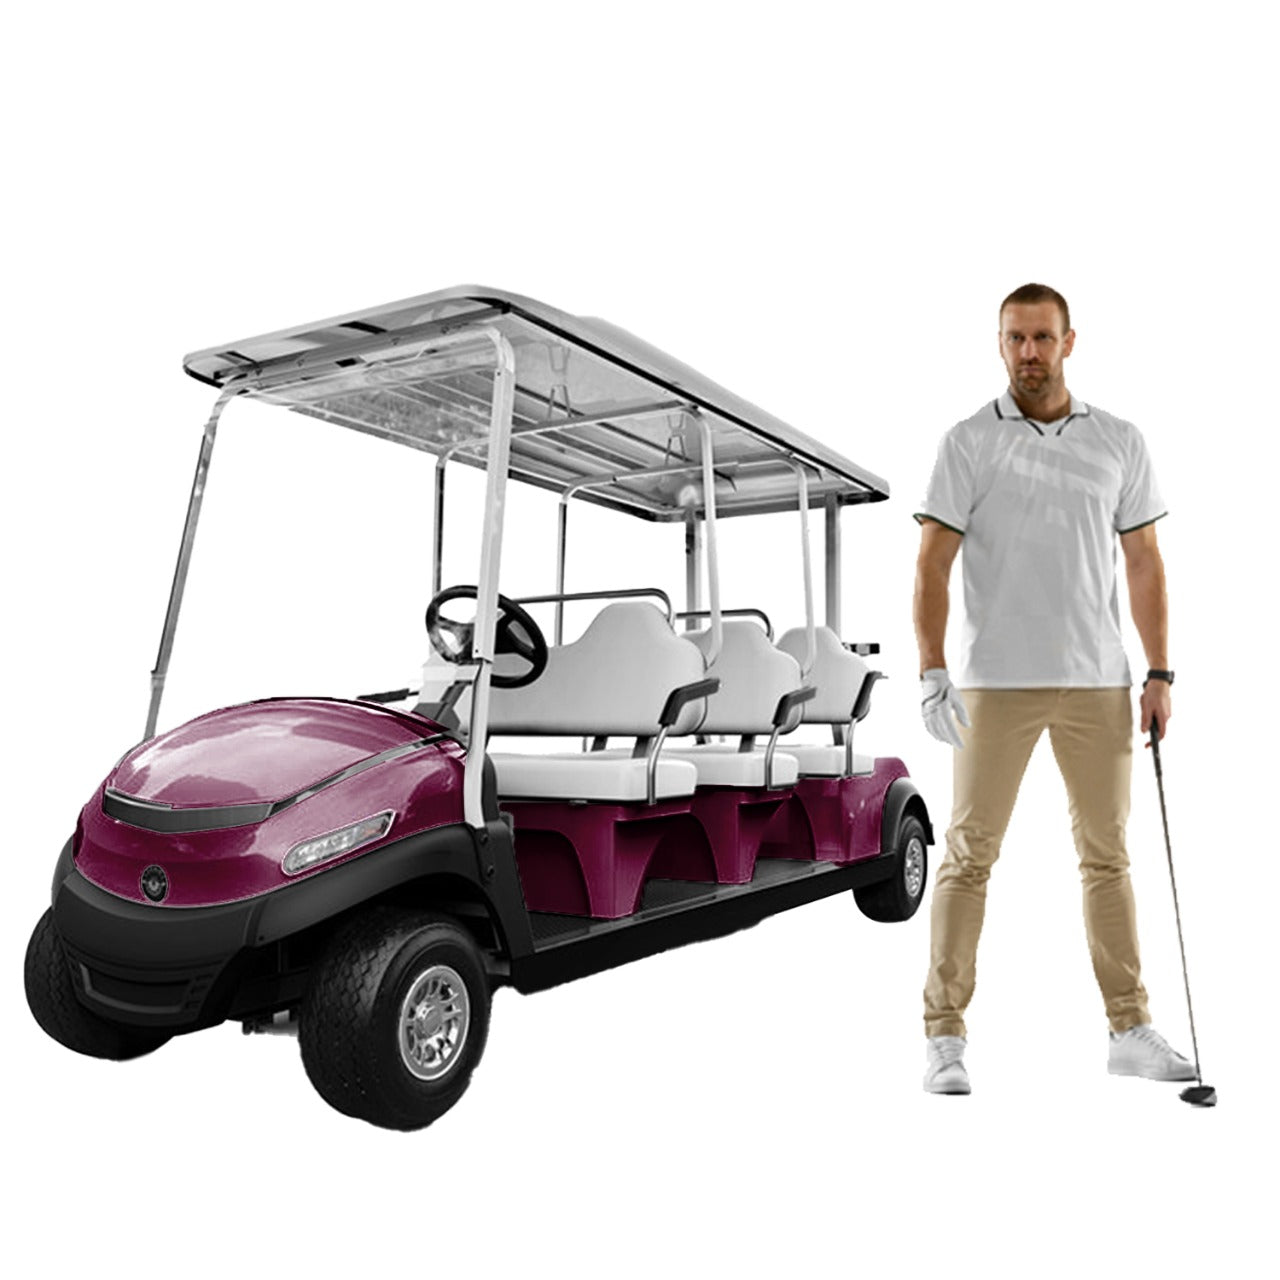 Megastar Golf club car 6 seater  electric golf cart-Maroon